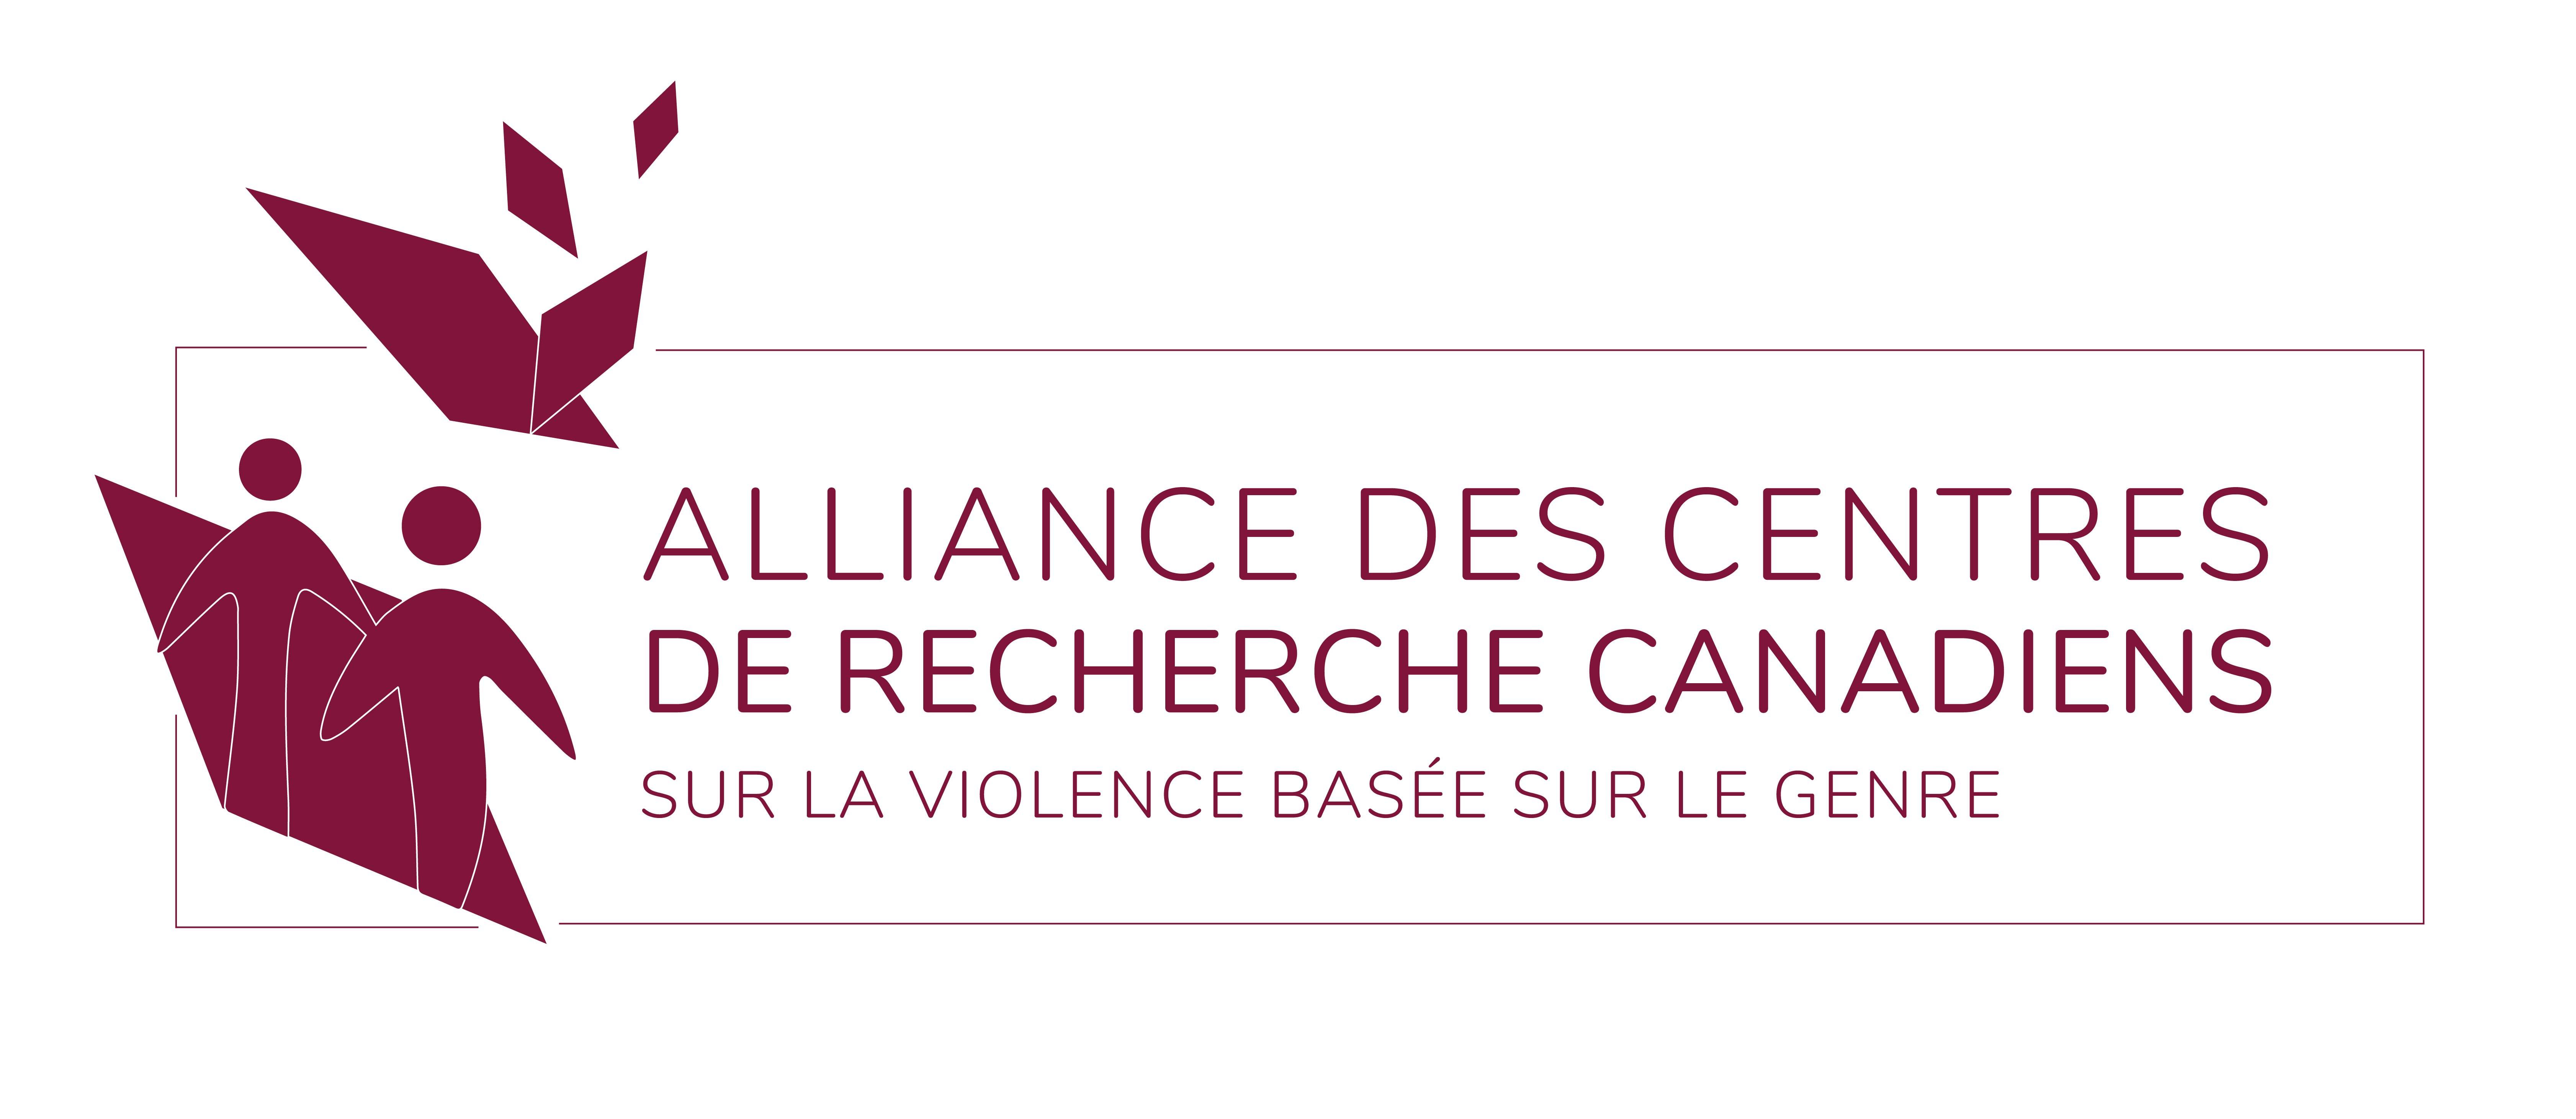 alliance-logo-fr-01.jpg